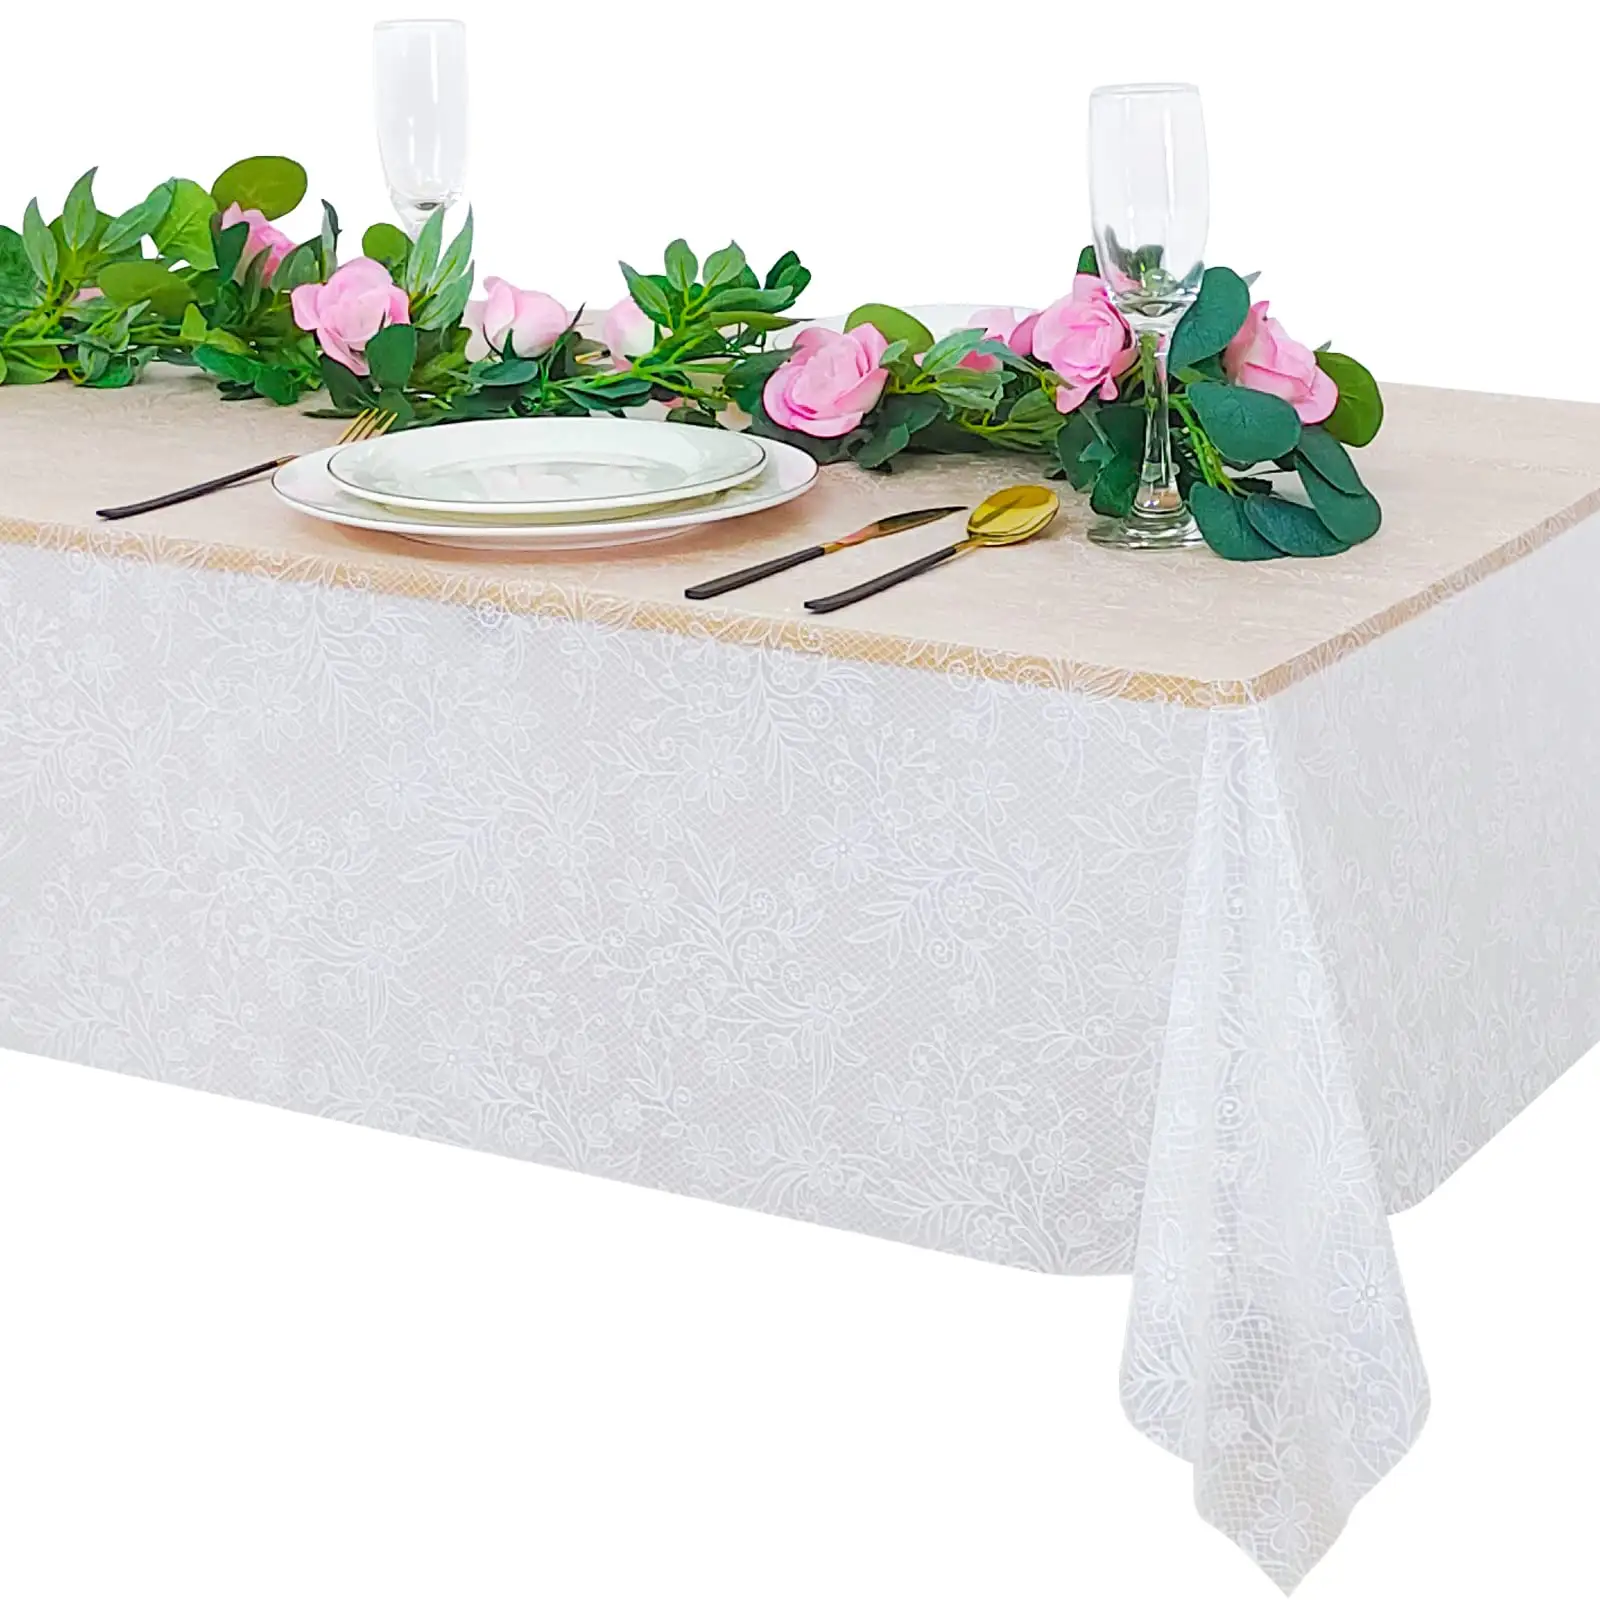 Cubierta de mesa impermeable desechable personalizada de PEVA, mantel de encaje, decoración de recepción nupcial, plástico Rectangular para fiesta de boda